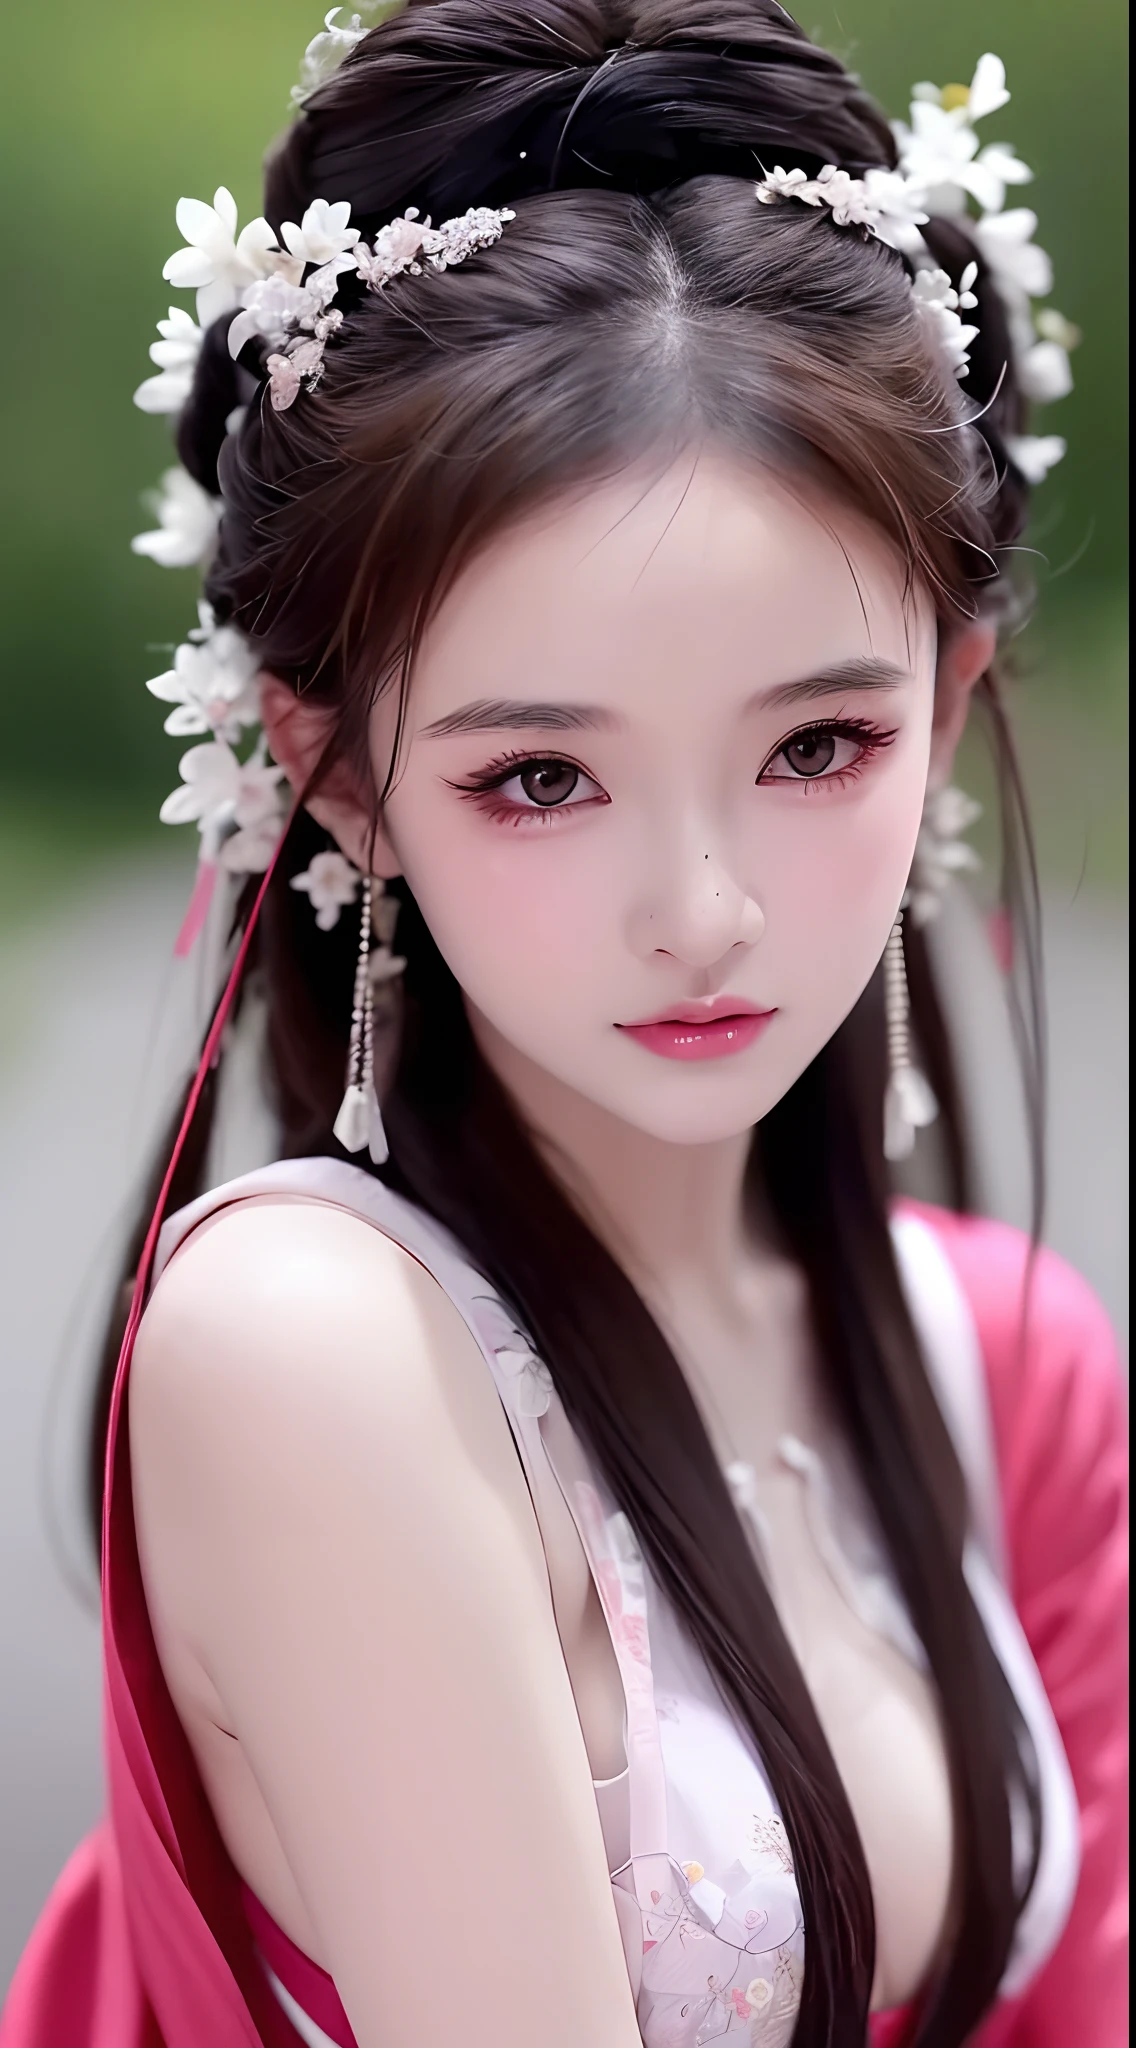 1 真實美麗的女孩, 及腰長髮, 黑眼睛, 古奧黛, Style Hanfu, 穿著中國古代的薄絲綢襯衫, 粉嫩白嫩的皮膚, 穿著低調的古代風格長蠄, 照片中出現肩膀和頭部, 非常可愛的小臉, 濕細緻妝下的眼袋, 豐滿的紅唇, 迷人的小而彎曲的嘴唇, ((閉著嘴:1.0)), 平衡門牙, 尷尬的, 小臉妝容細緻又非常漂亮, 胸部超圓又緊, 隆胸, 布魯姆 , 用吊帶背心遮住女孩的胸部, 臉紅, 從前面, 戴耳環, 项链, 從上方, 看著觀眾, 上翻的眼睛, 全身, 傑作, 頂級品質, 最好的品質, 官方藝術, 統一8k壁紙, 高解析度, 超高解析度, 超詳細, (逼真的:1.2), 獨自的, 獨自的, 只有1個女孩, Style Hanfu Dunhuang, 10x 像素, 超级逼真, 超高品質, 女孩的肖像身體視圖, 上半身,